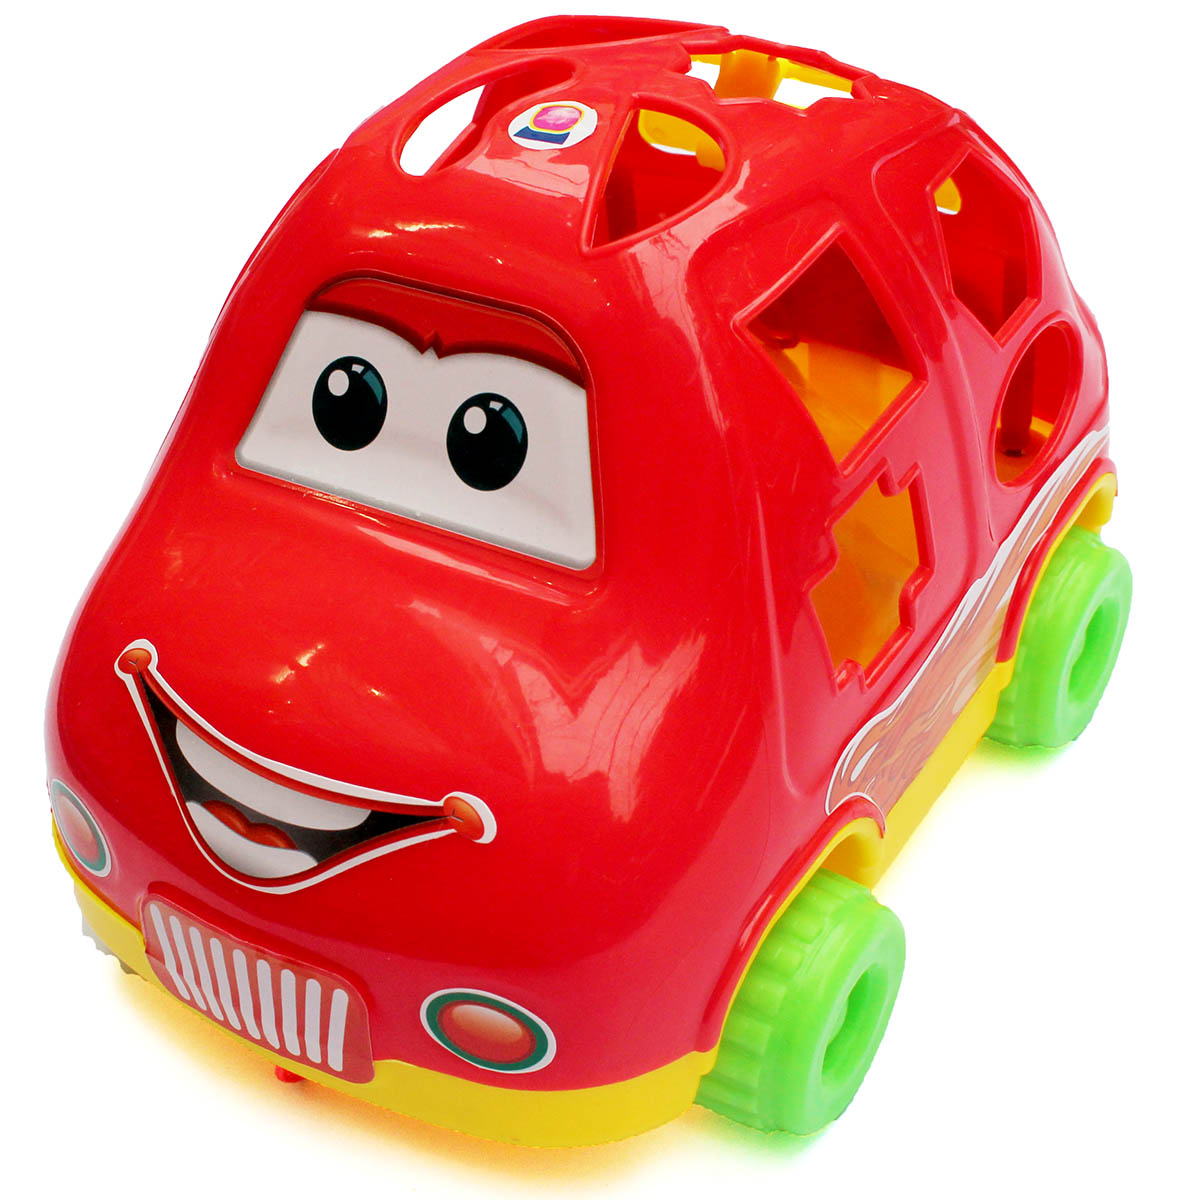 Đồ chơi xe ô tô Antona là một lựa chọn tuyệt vời để phát triển trí tưởng tượng cho bé. Hãy nhìn vào hình ảnh để thấy sự đa dạng và hấp dẫn của sản phẩm này.